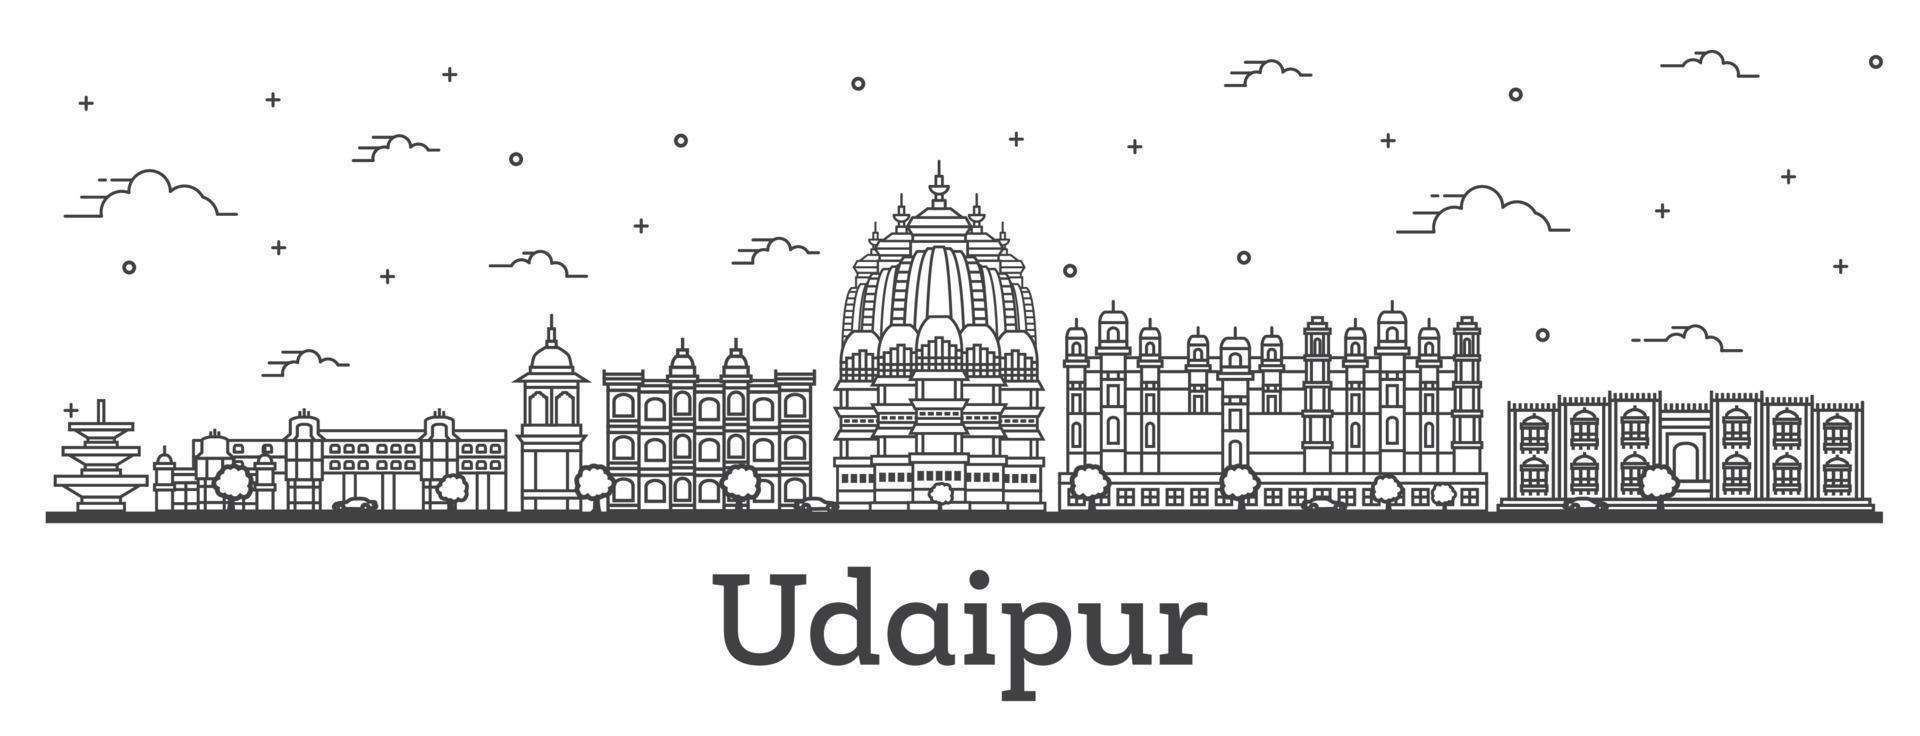 delinear el horizonte de la ciudad de udaipur india con edificios históricos aislados en blanco. vector